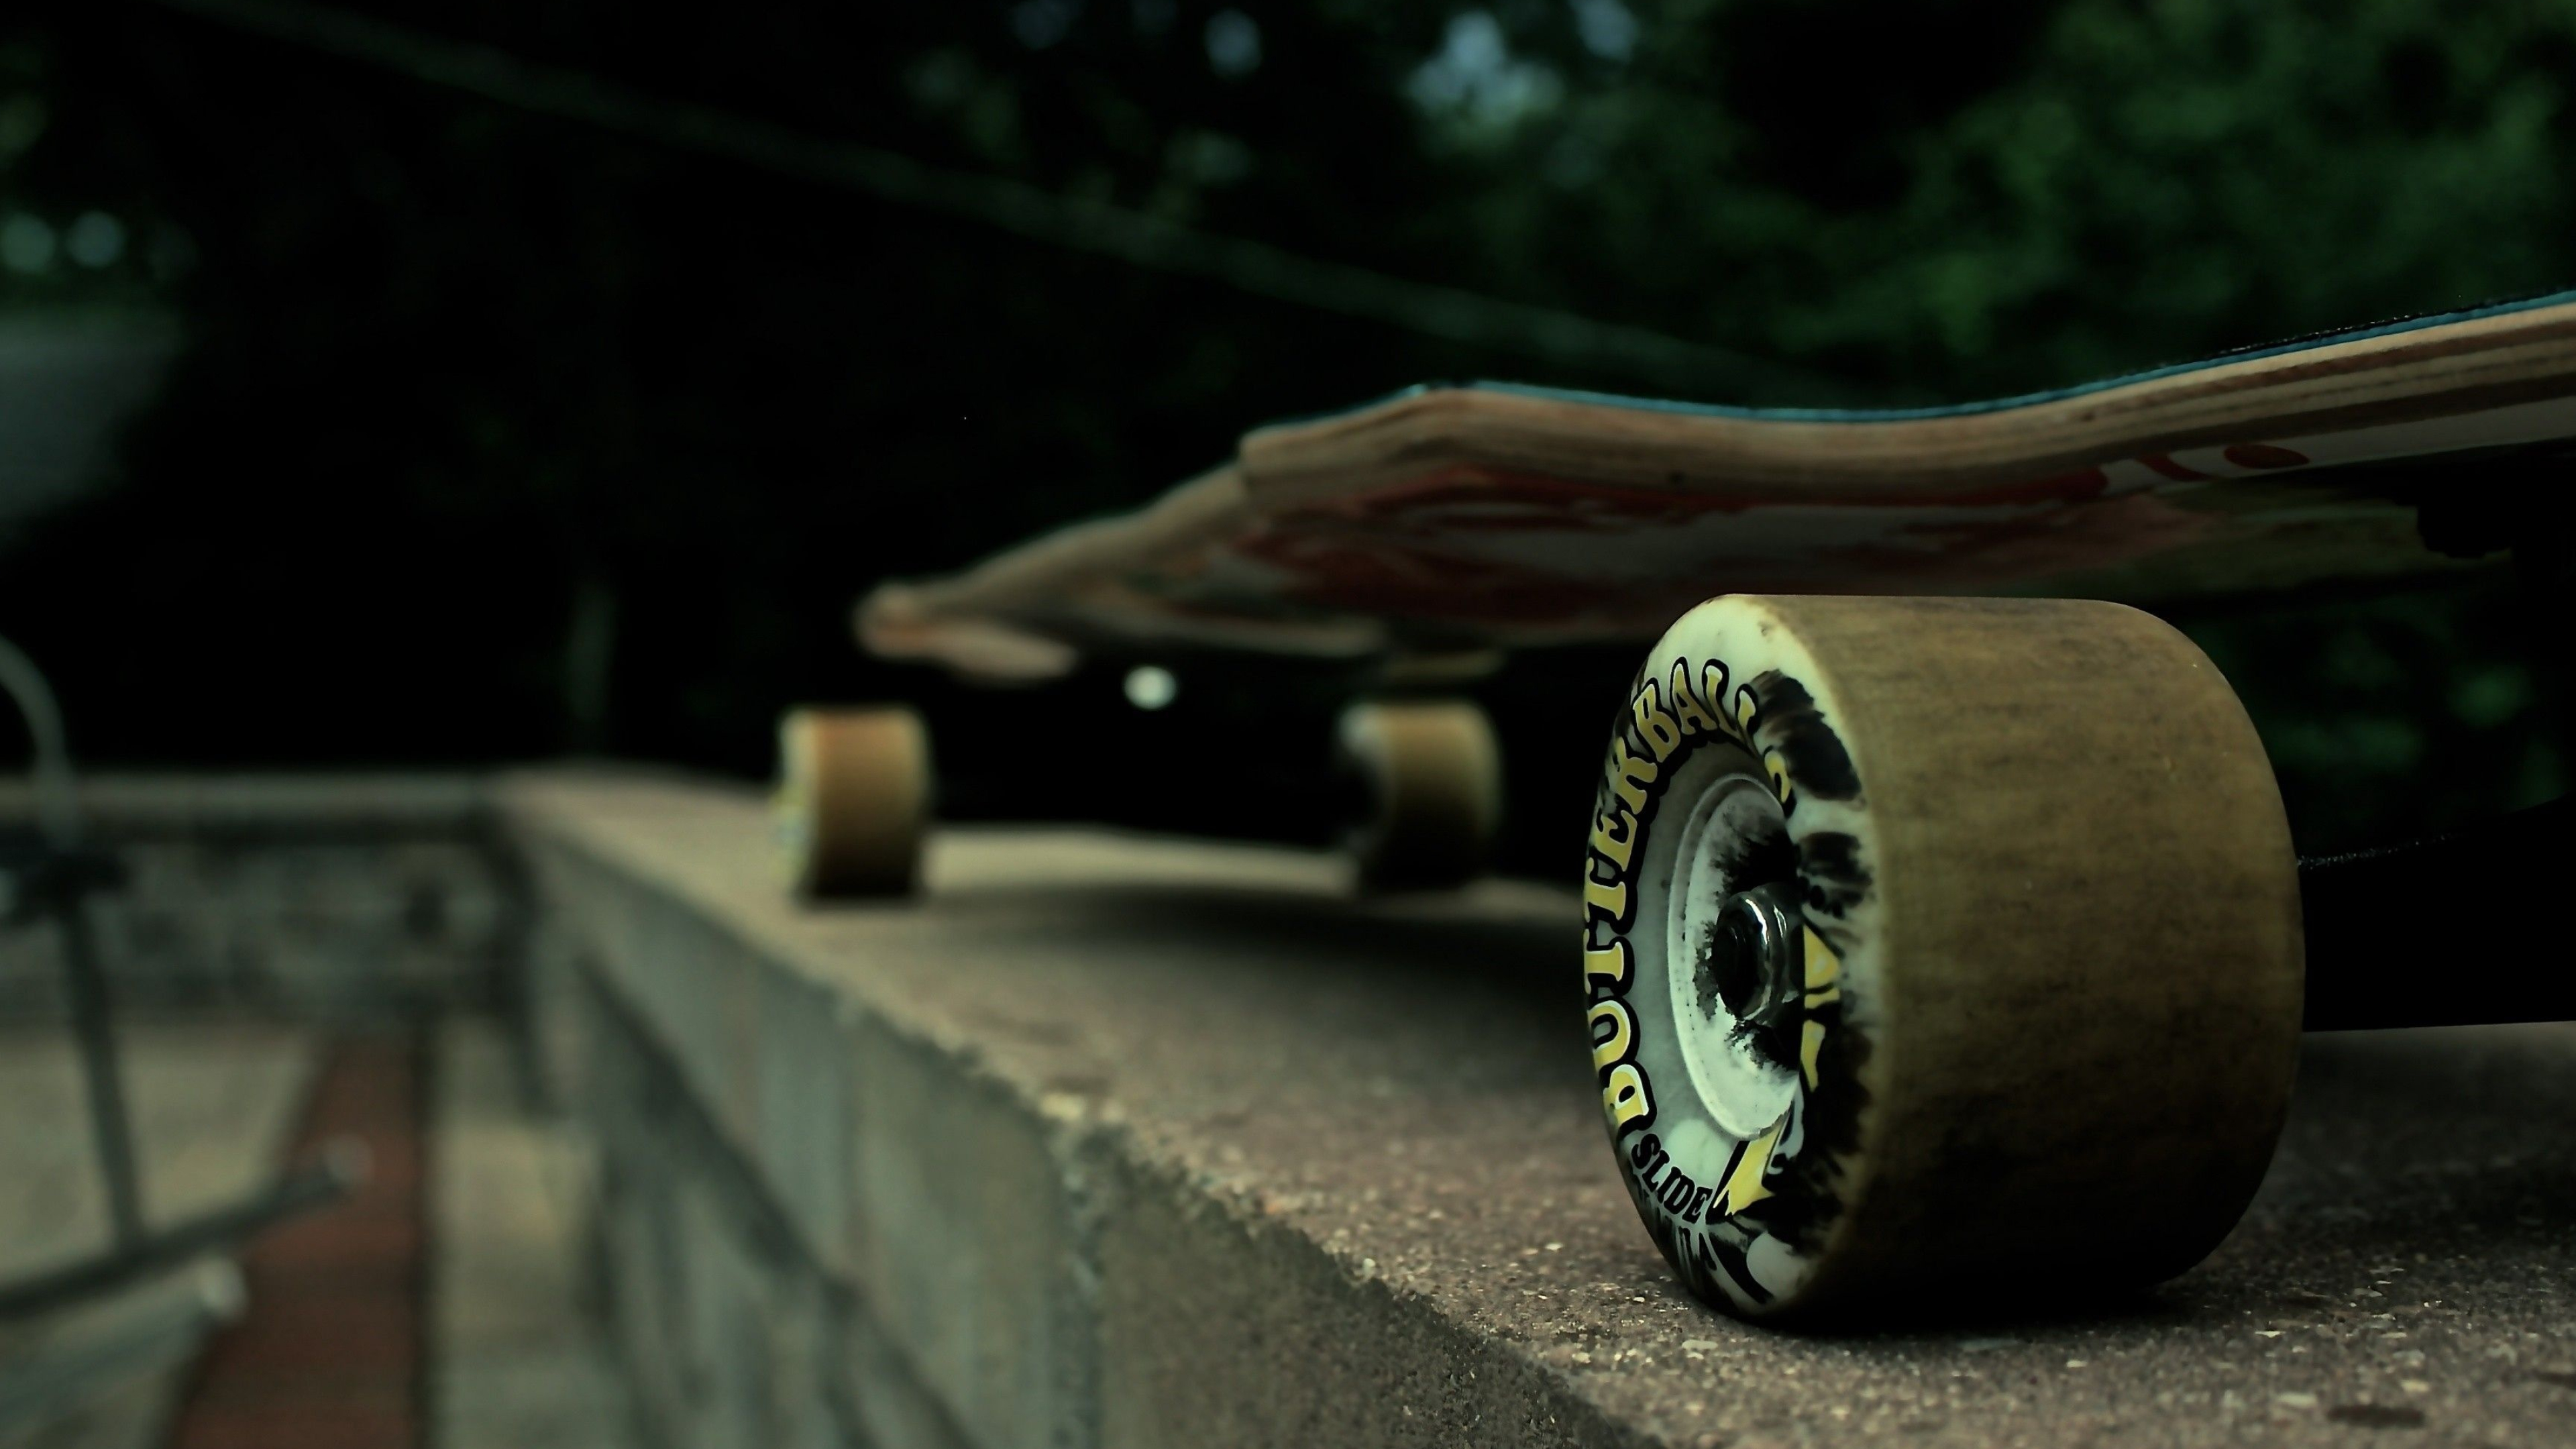 Longboarding: Longboard, A type of skateboard that is faster because of wheel size. 3840x2160 4K Wallpaper.